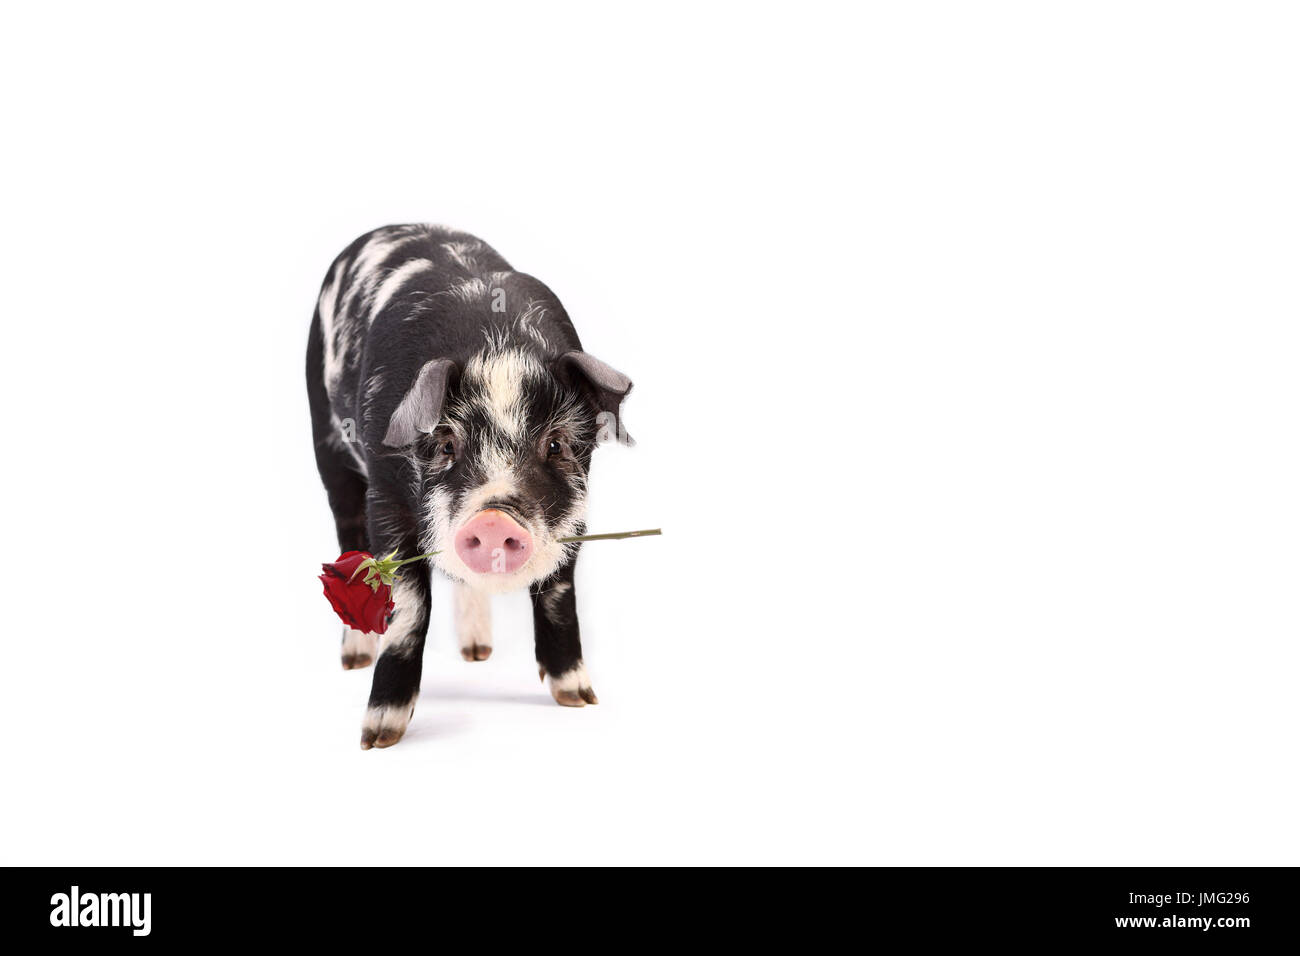 Turopolje Schweine. Ferkel stehen während des Tragens einer roten Rose im Maul. Studio Bild vor einem weißen Hintergrund. Deutschland Stockfoto